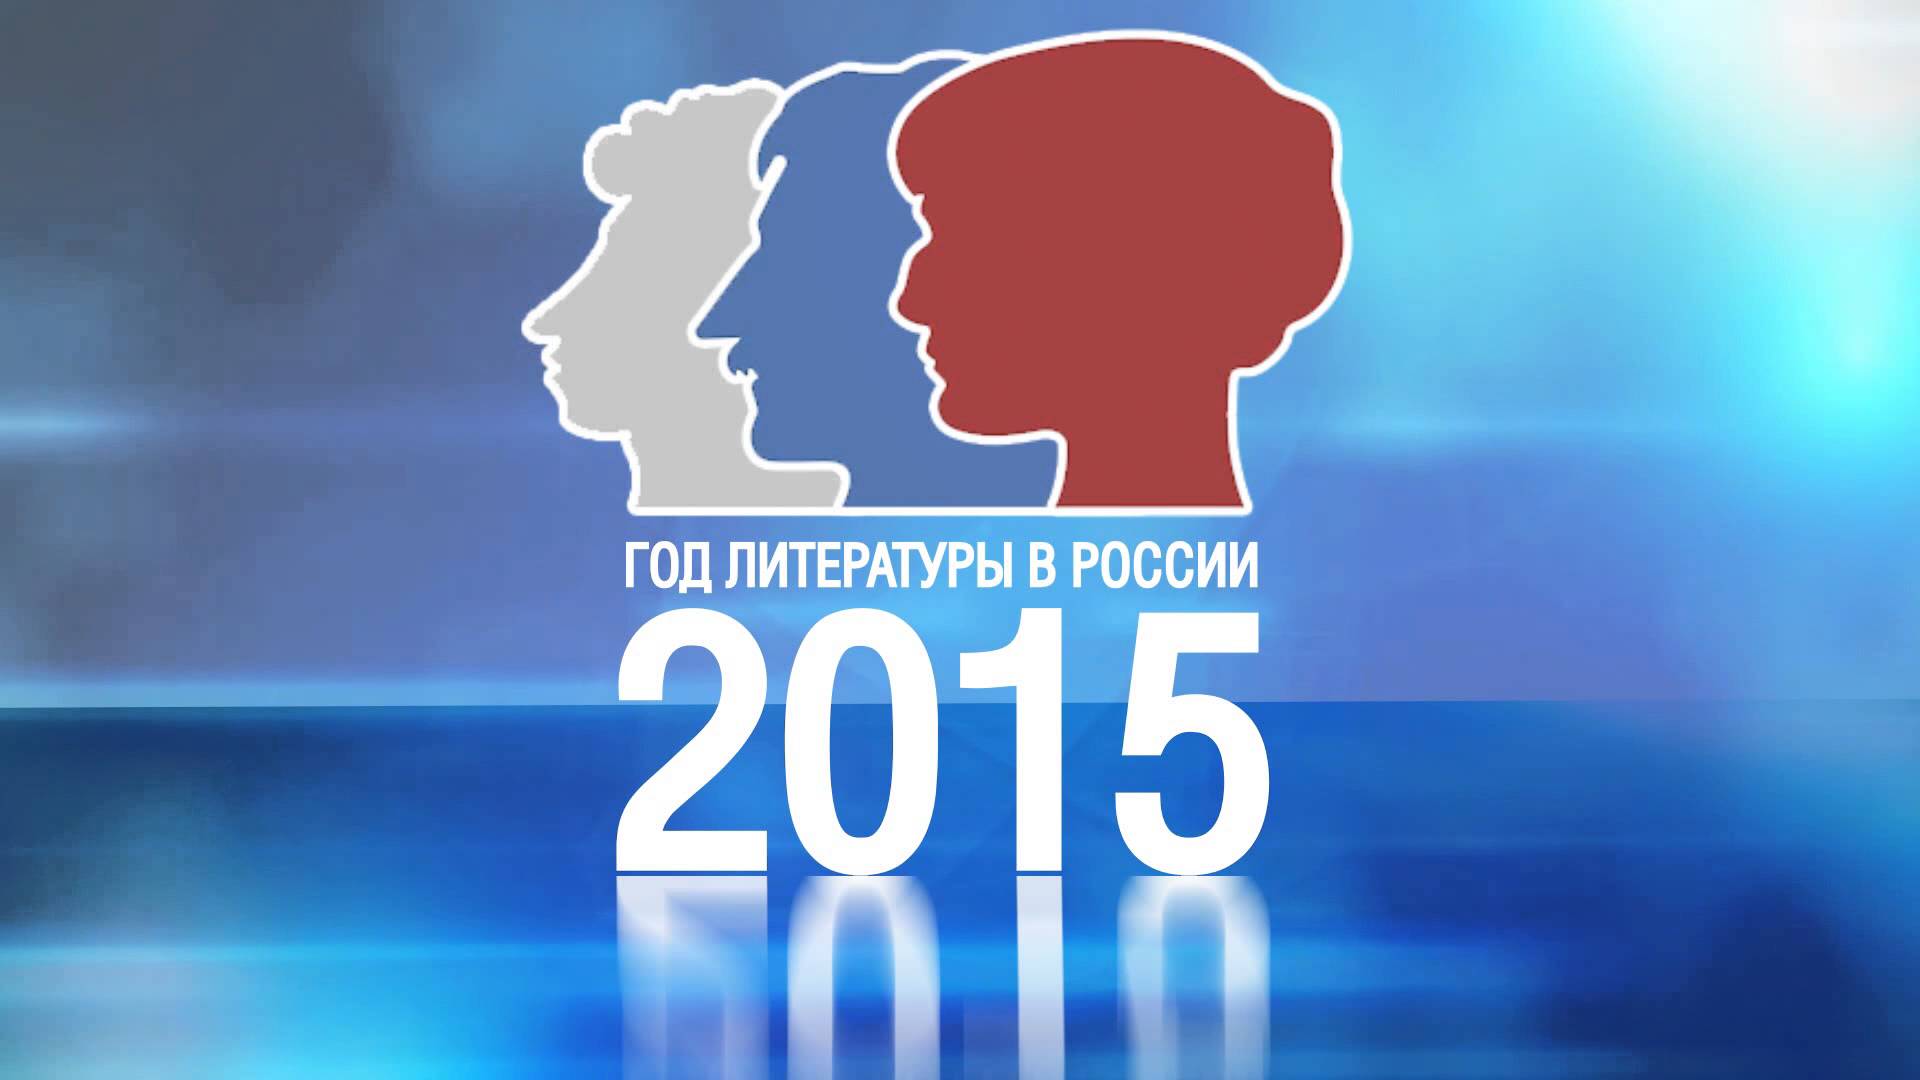 В 2015 году официальная. Год литературы в России. Год литературы 2015. Год литературы в России 2015. Год литературы логотип.